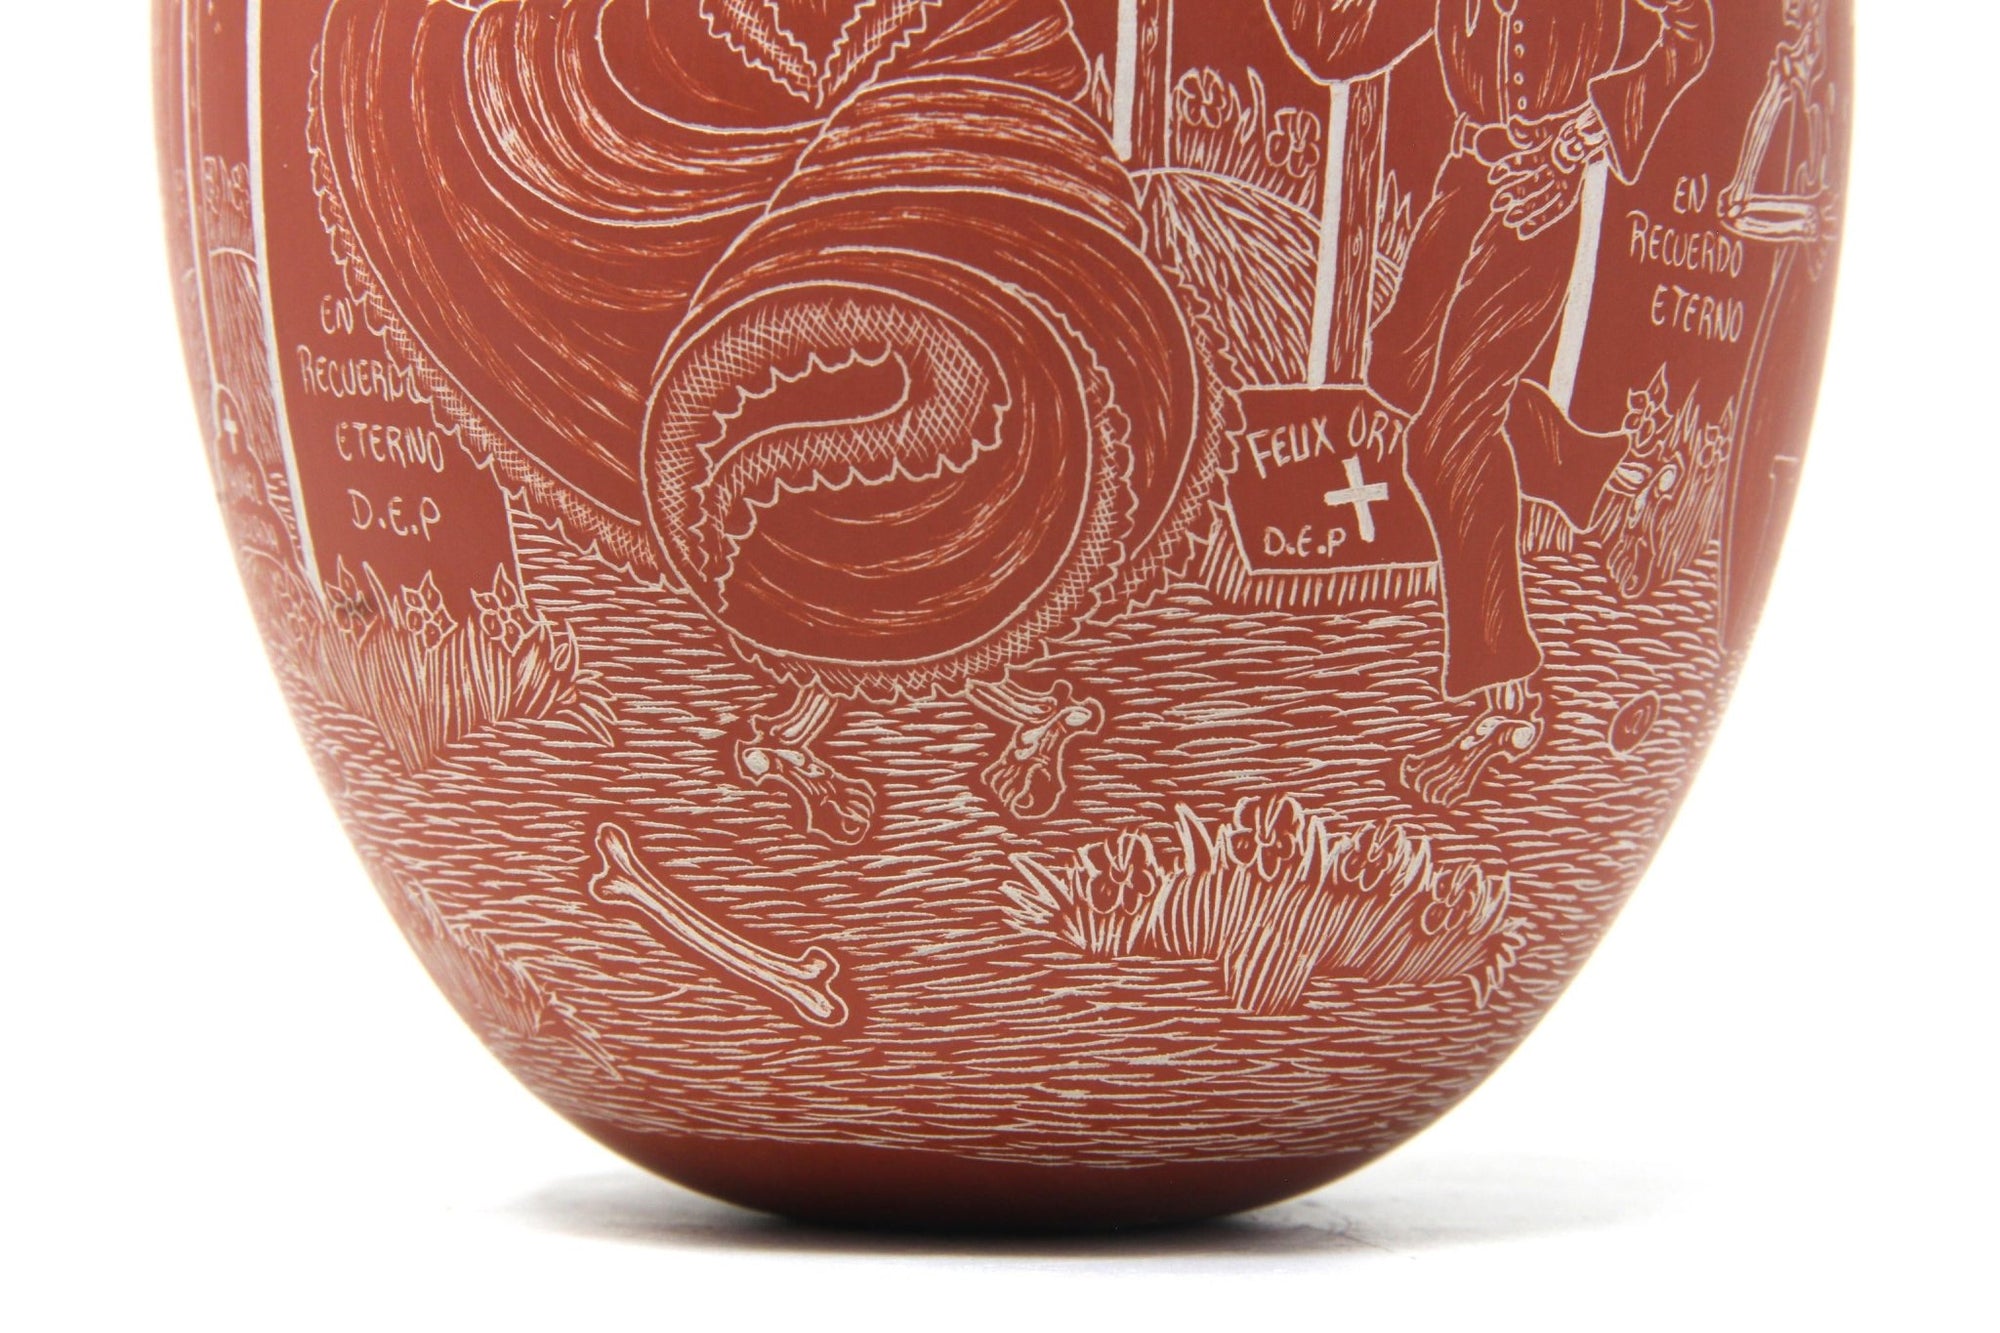 Ceramica Mata Ortiz - Giorno dei morti - danza alla vita / notte - Arte Huichol - Marakame